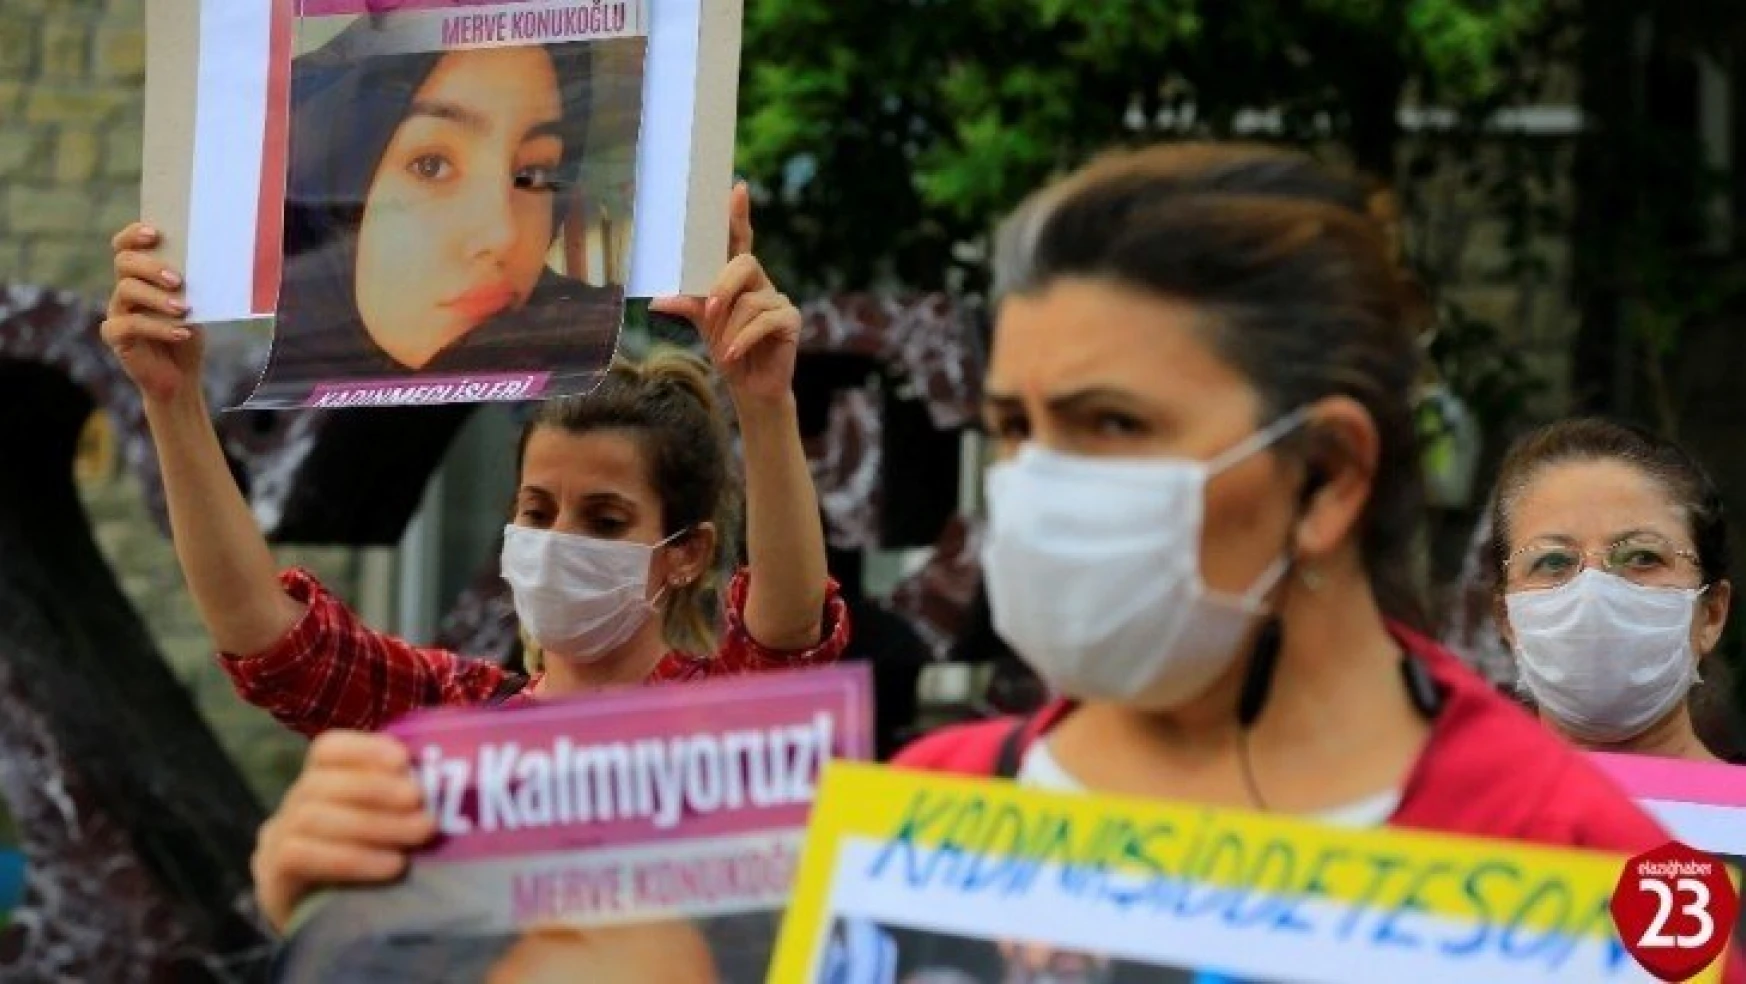 Elazığ'da kadınlardan Merve cinayetine tepki